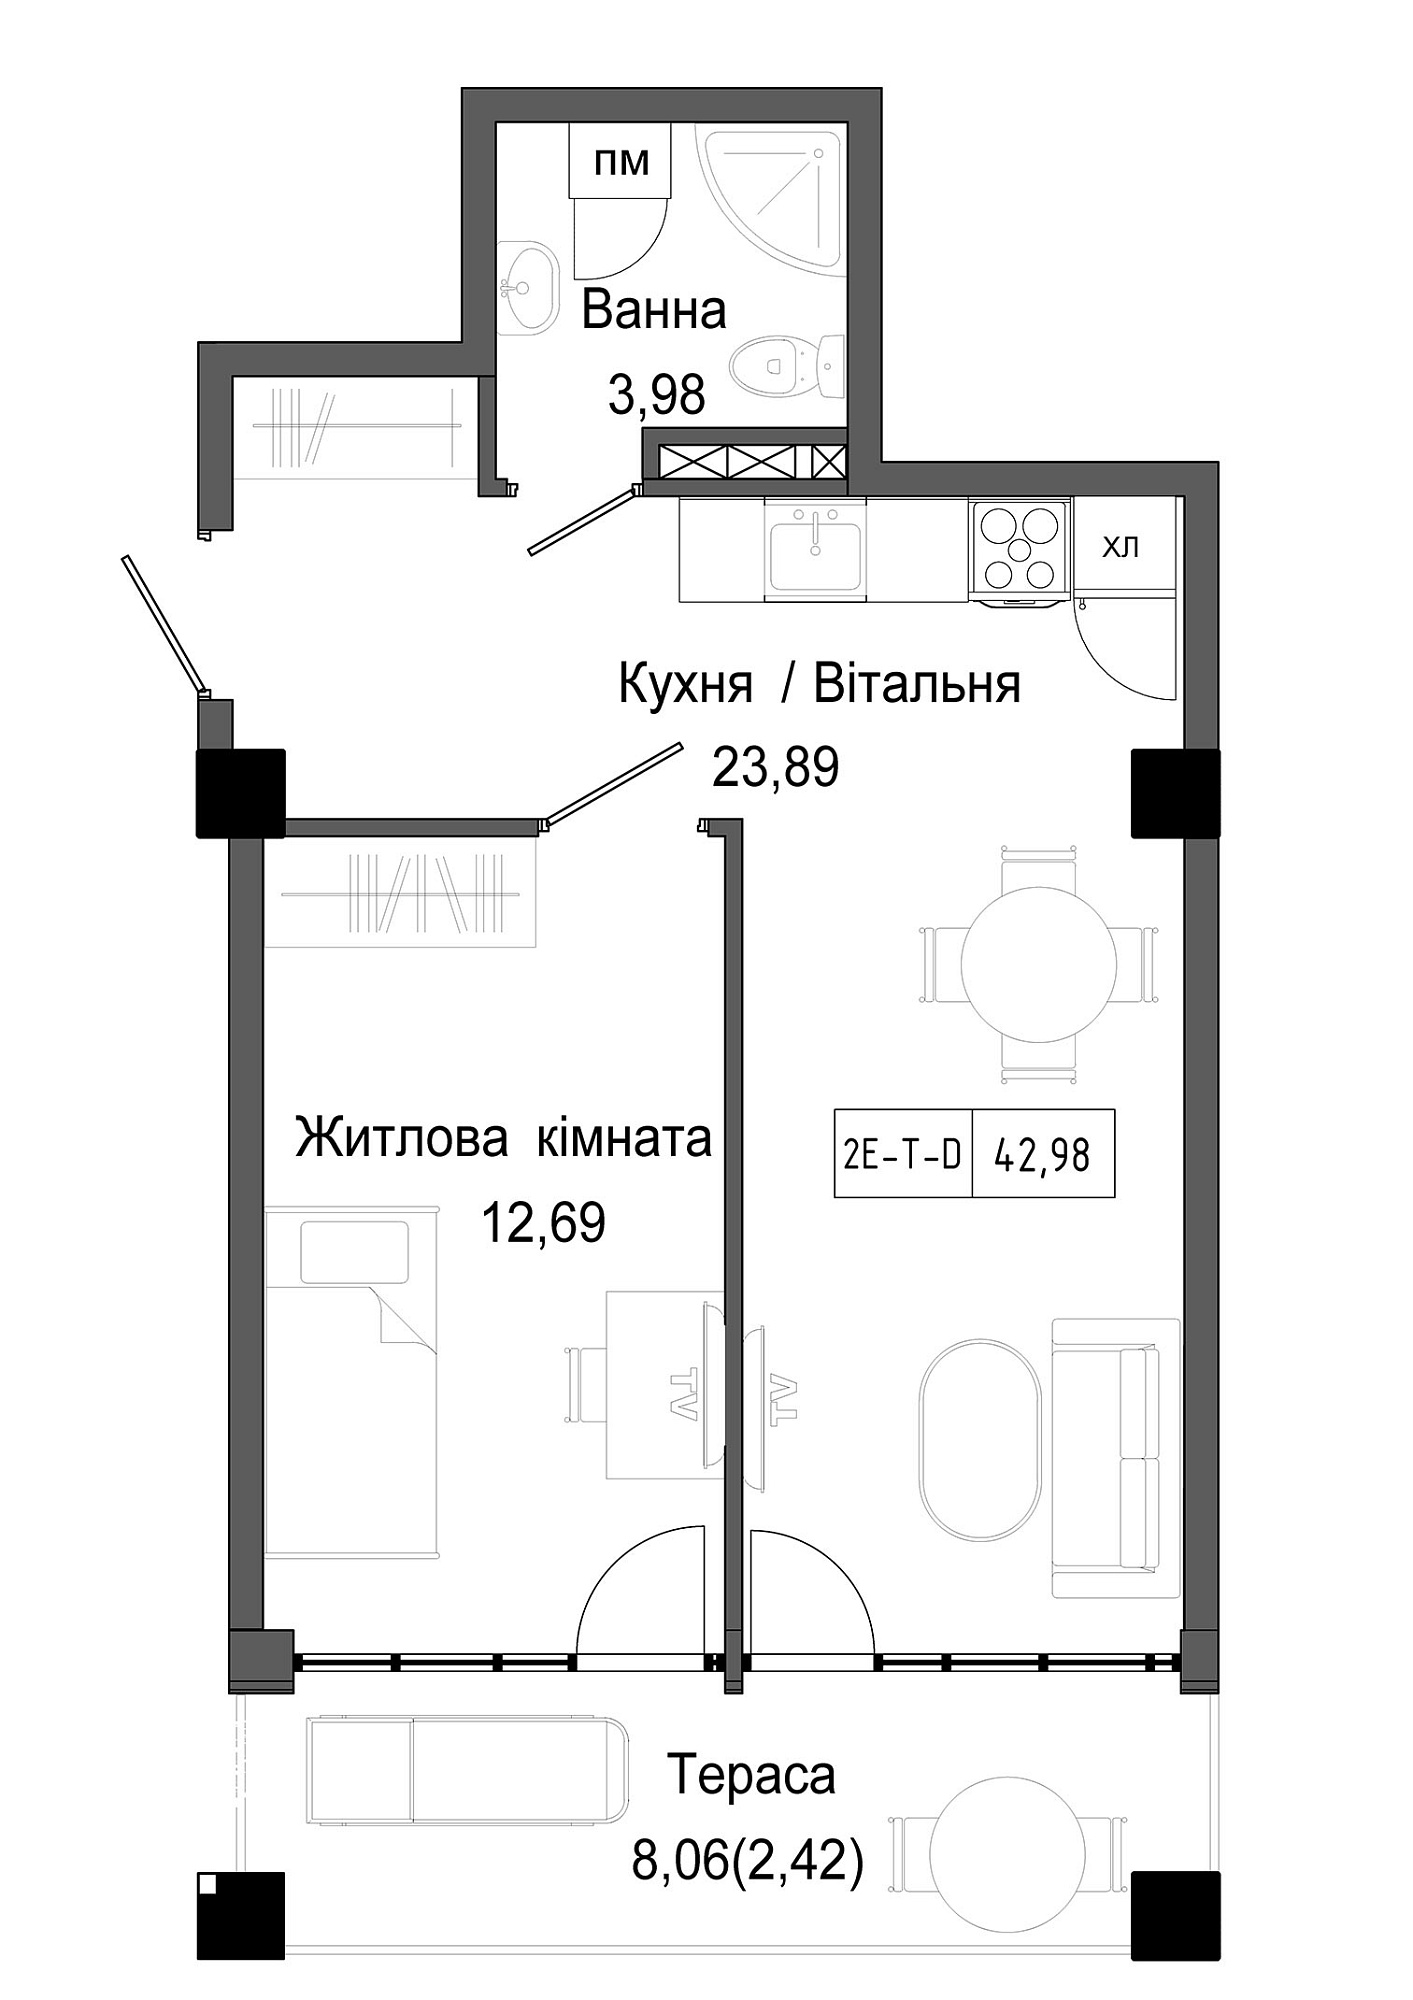 Планировка 1-к квартира площей 42.98м2, UM-006-05/0006.